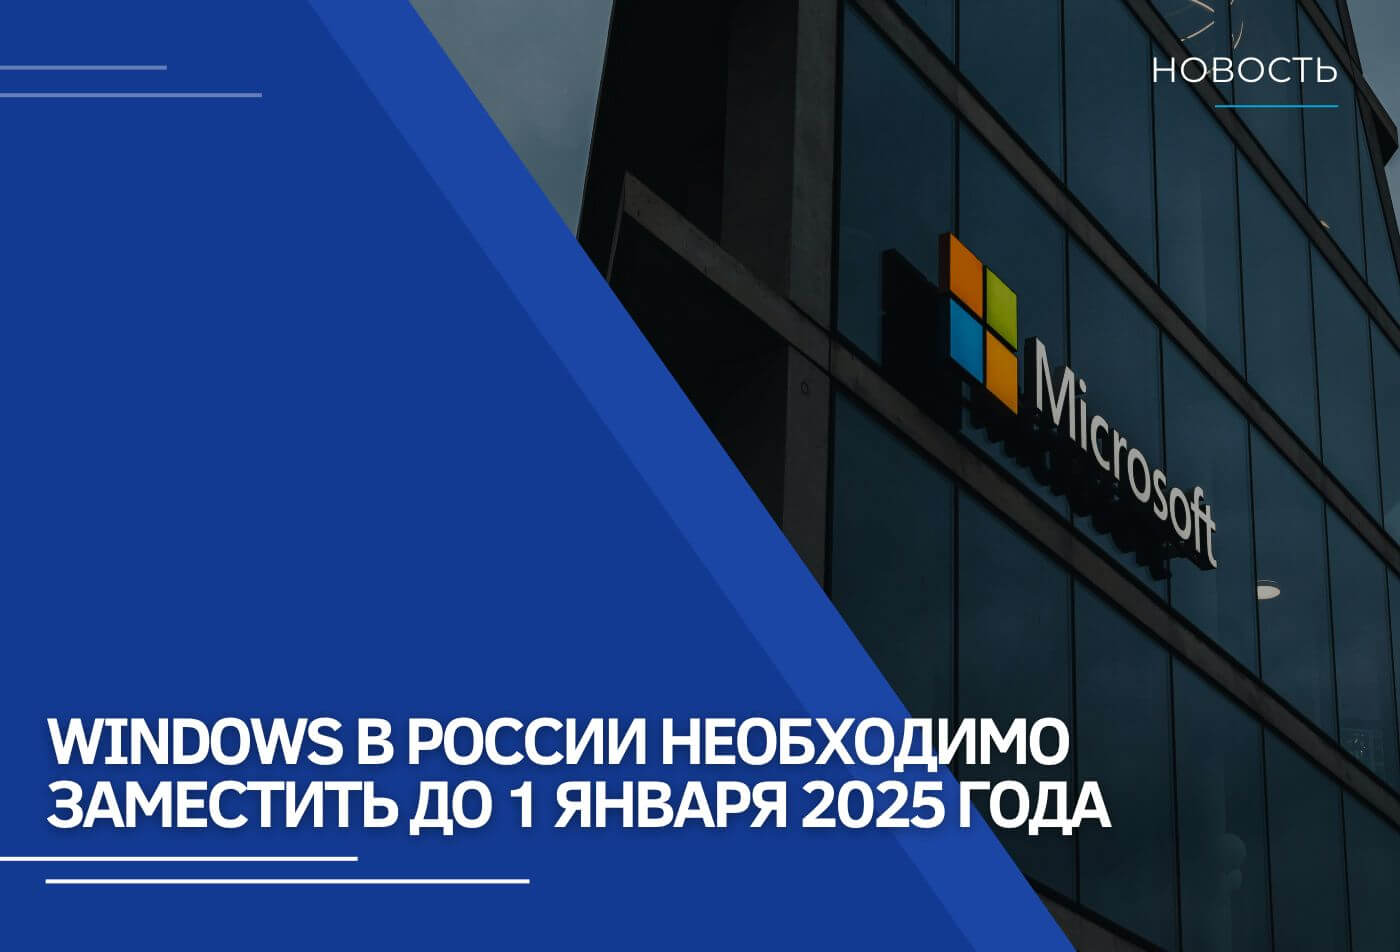 Windows в России необходимо заместить до 1 января 2025 года